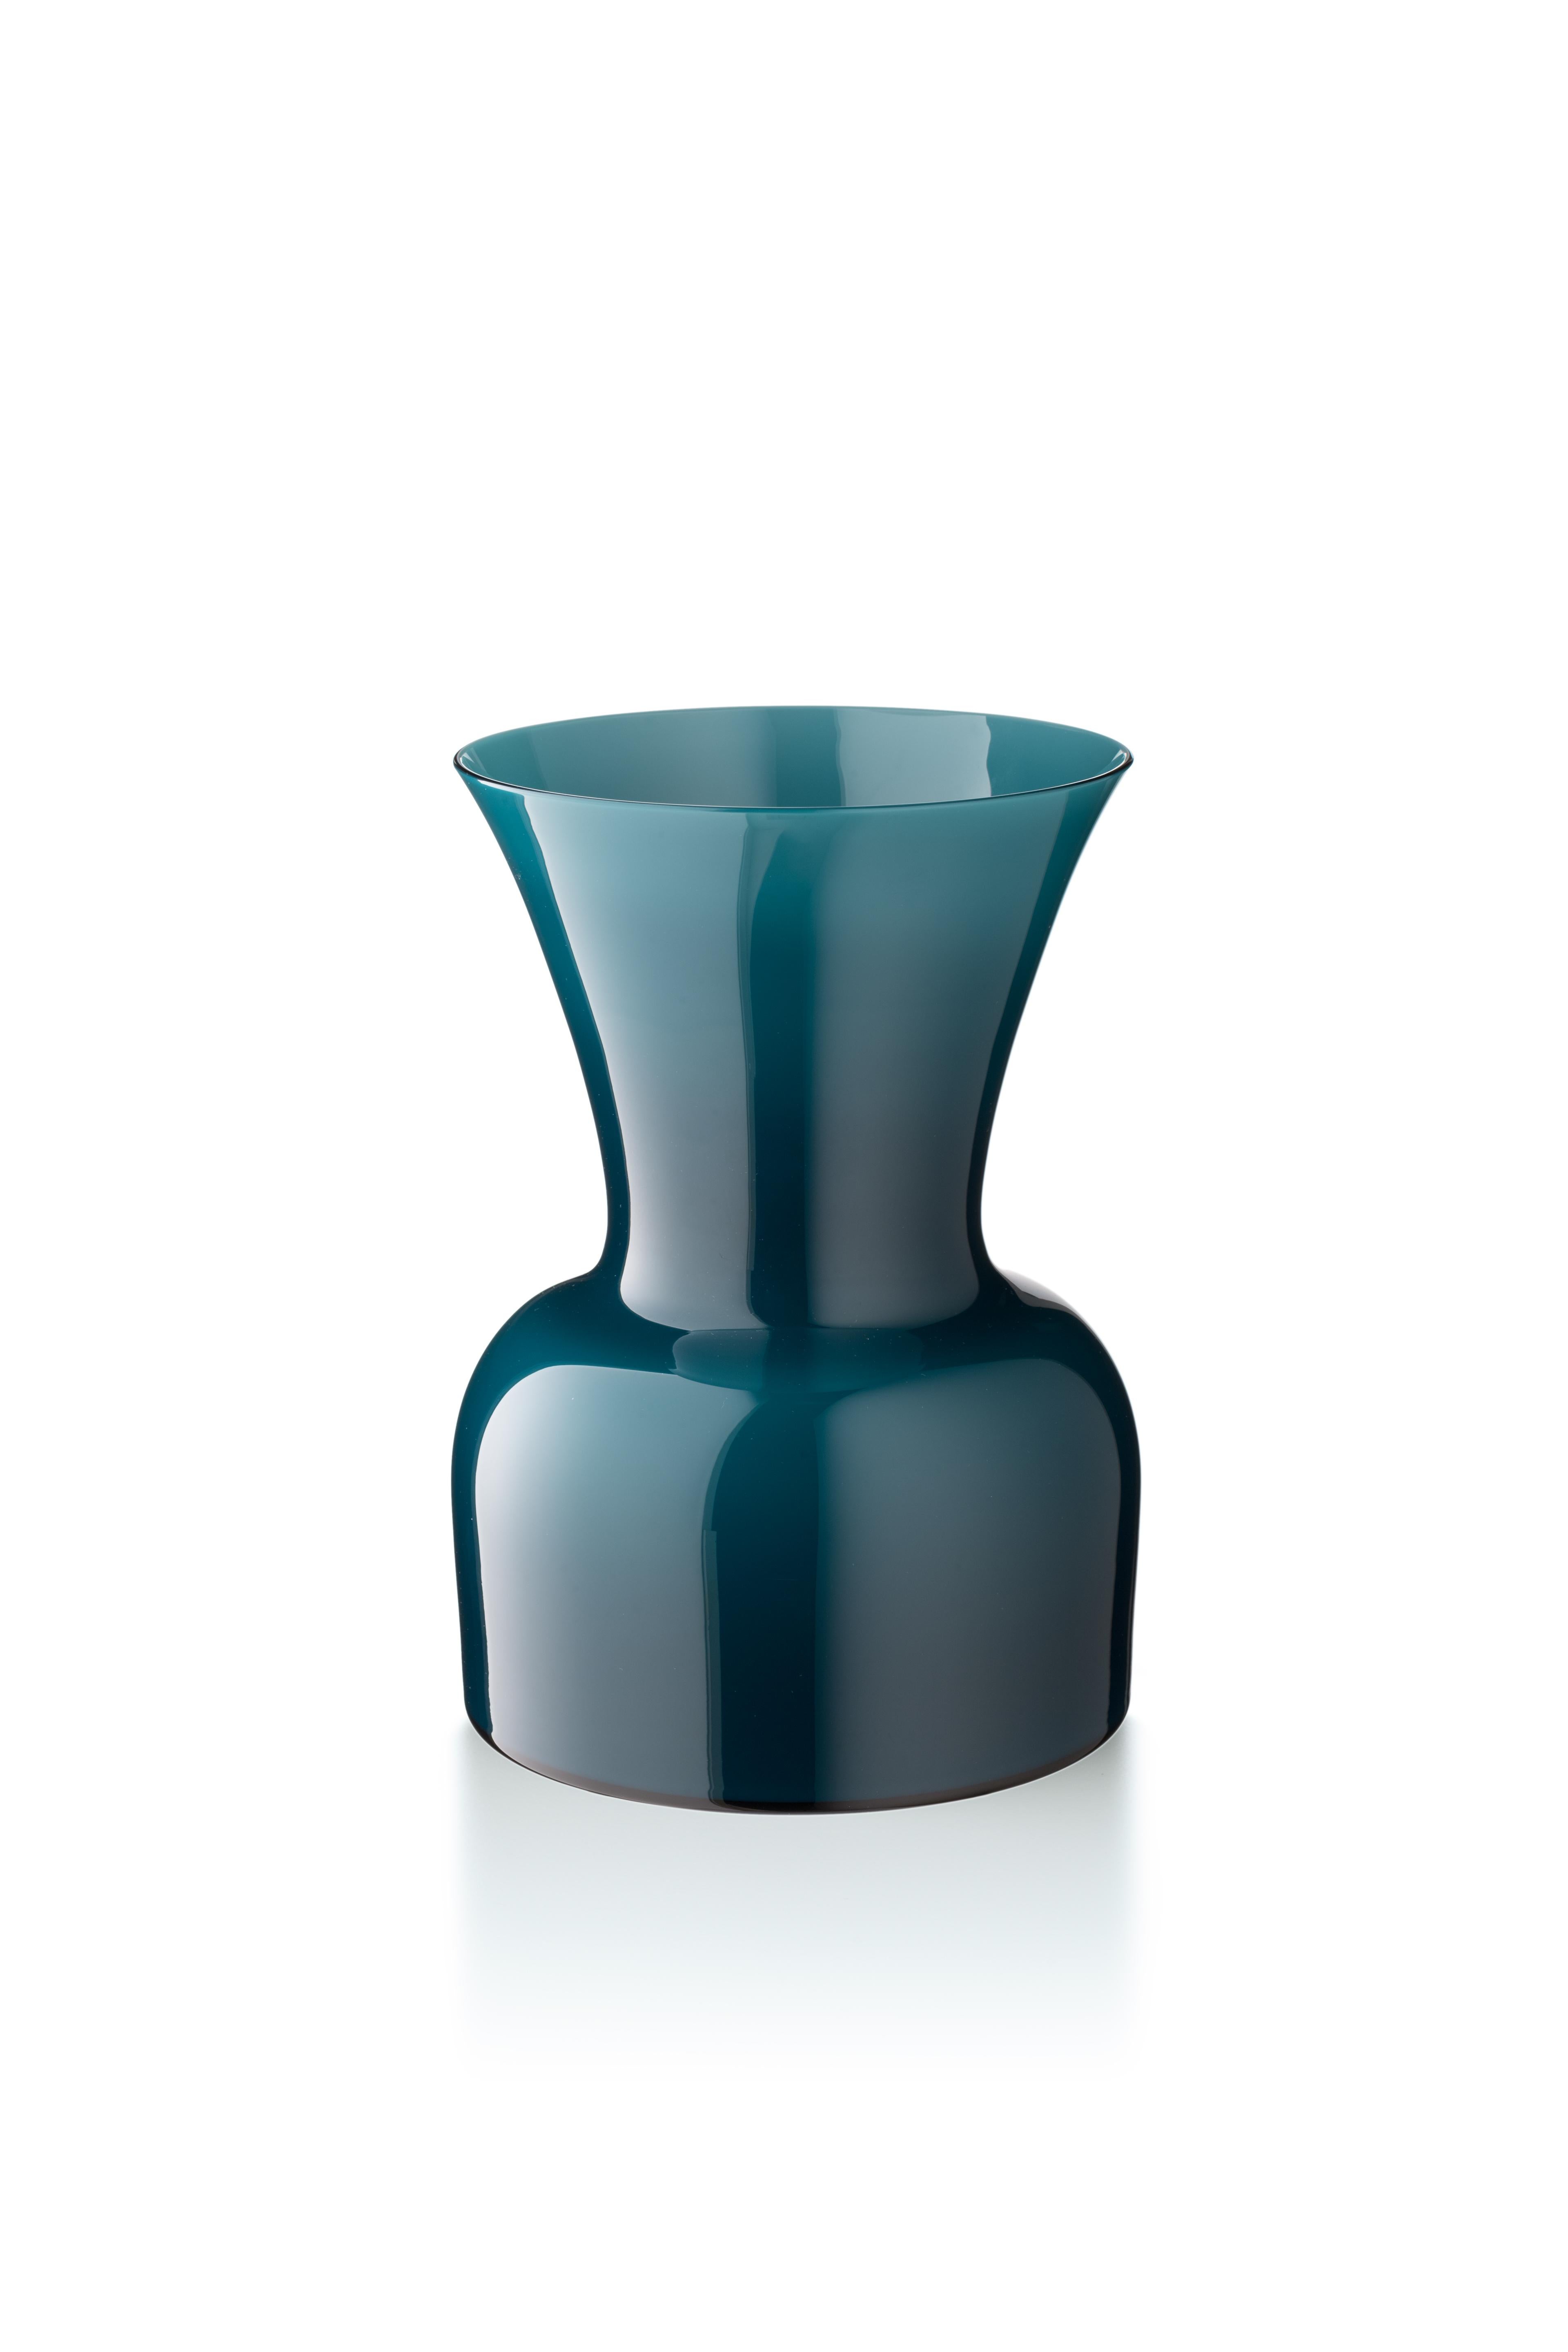 Green (10052) Medium Profili Daisy Murano Glass Vase by Anna Gili